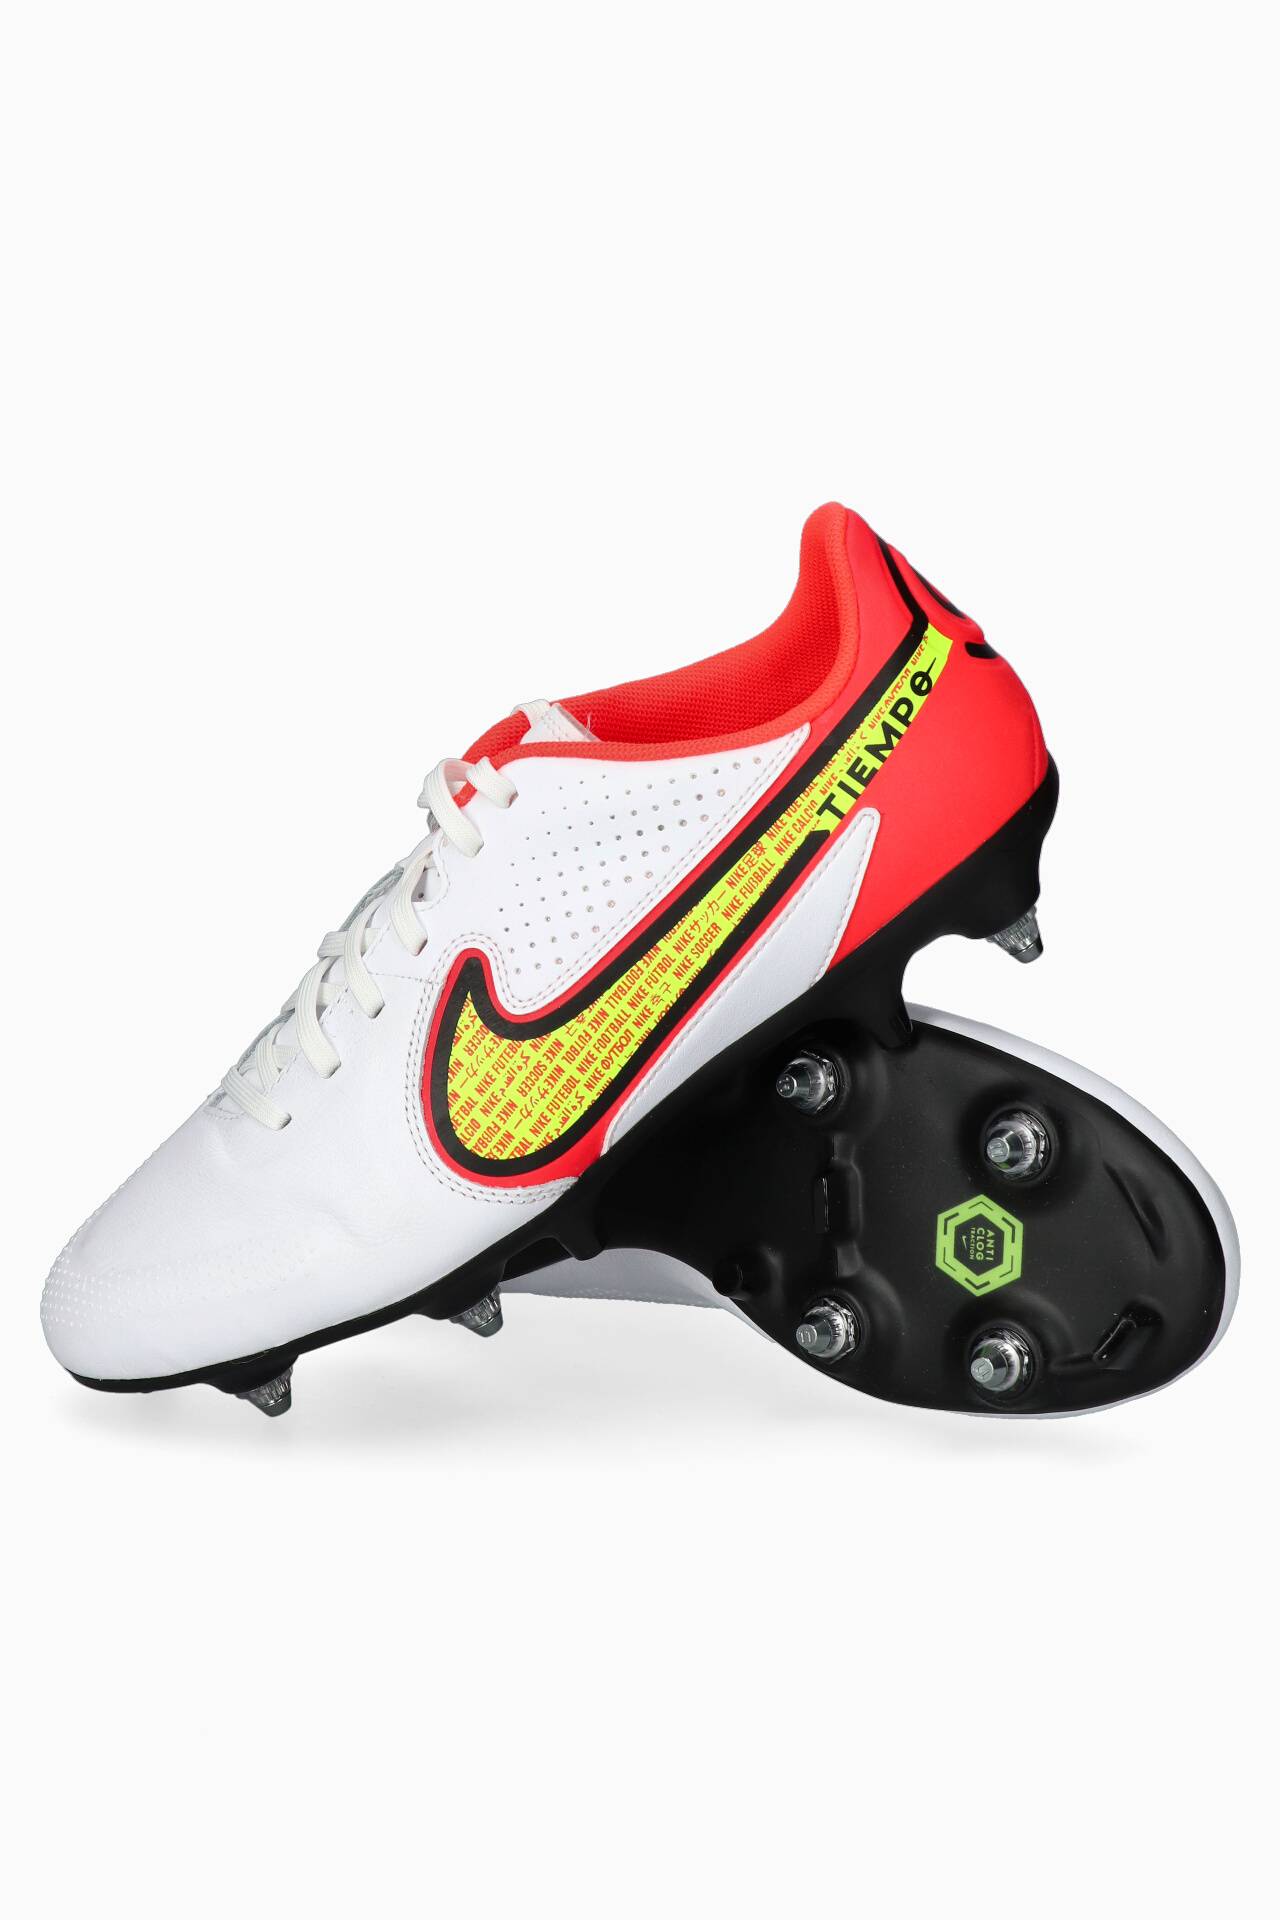 Botas tacos Nike Tiempo Legend 9 SG-PRO AC | Botas de fútbol, equipamiento y accesorios | Tienda R-GOL.com